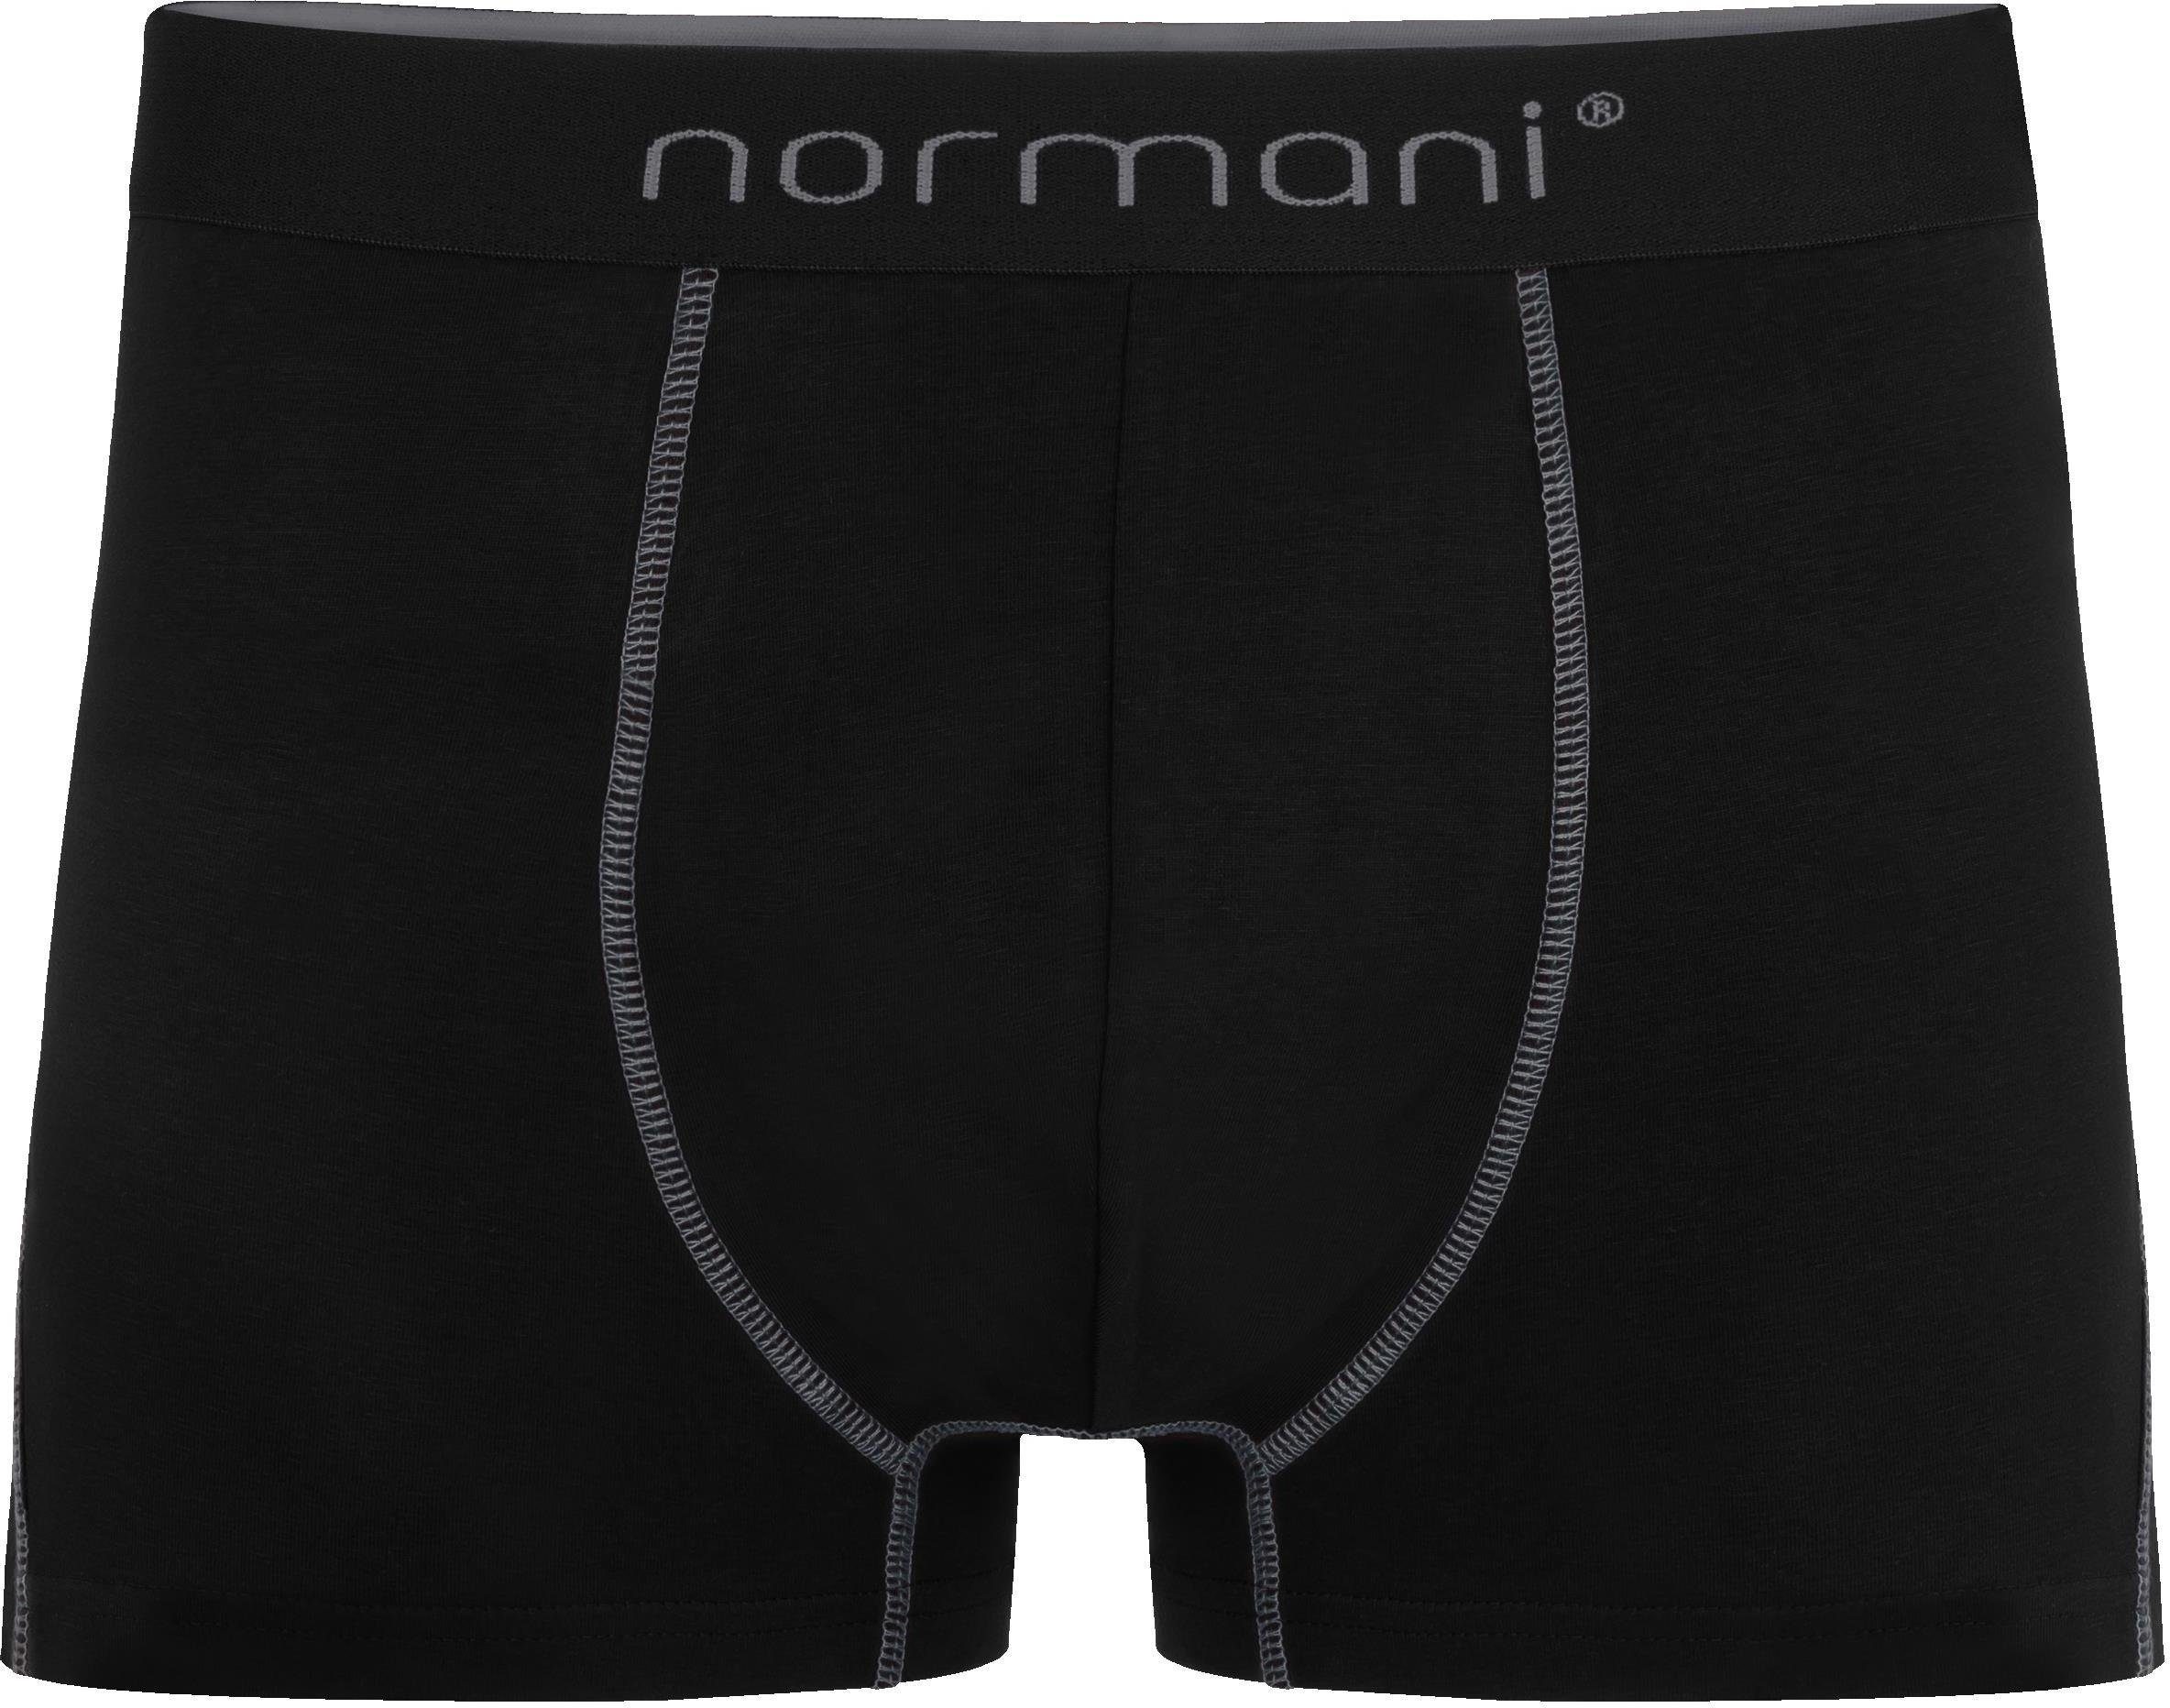 normani Boxershorts 6 Baumwoll-Boxershorts Grau Unterhose Baumwolle aus atmungsaktiver Männer für Herren